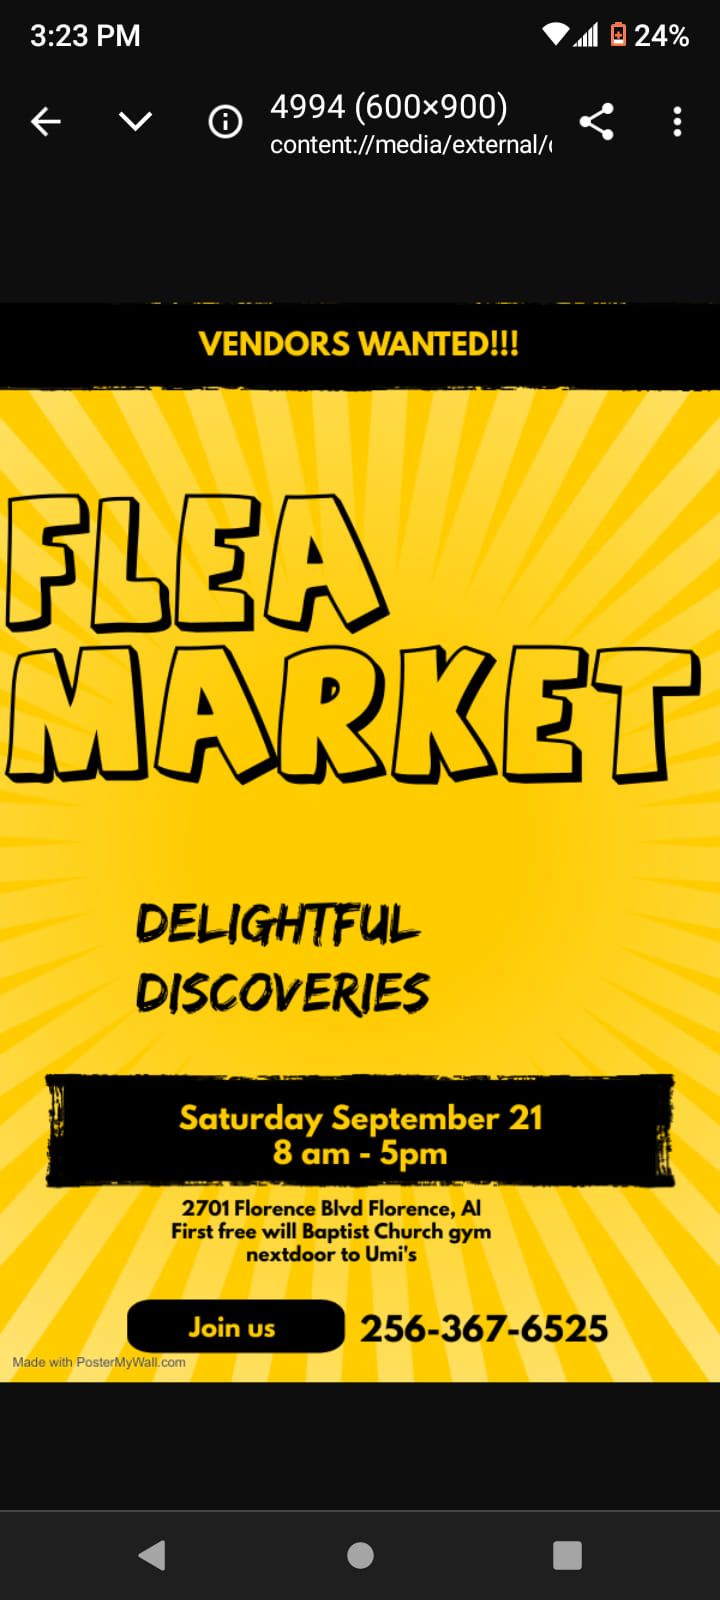 DELIGHTFUL DISCOVERIES Flea market 